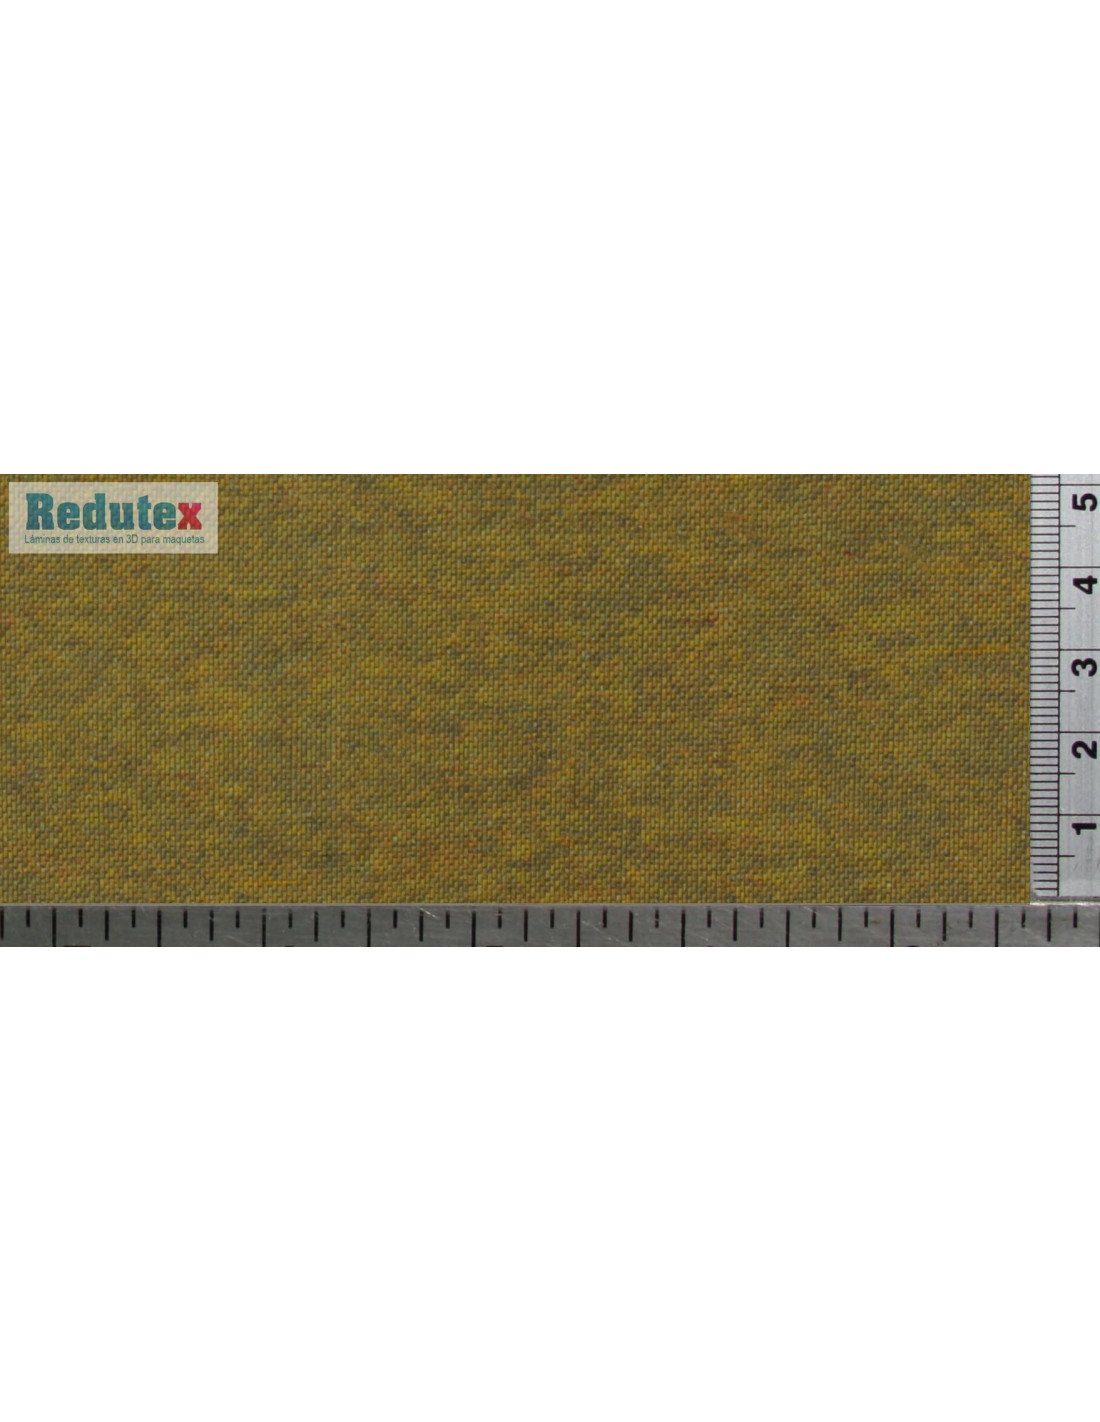 Multicolor 48430 en 2 Rollos NOCH- Adoquinado,100 x 5cm 